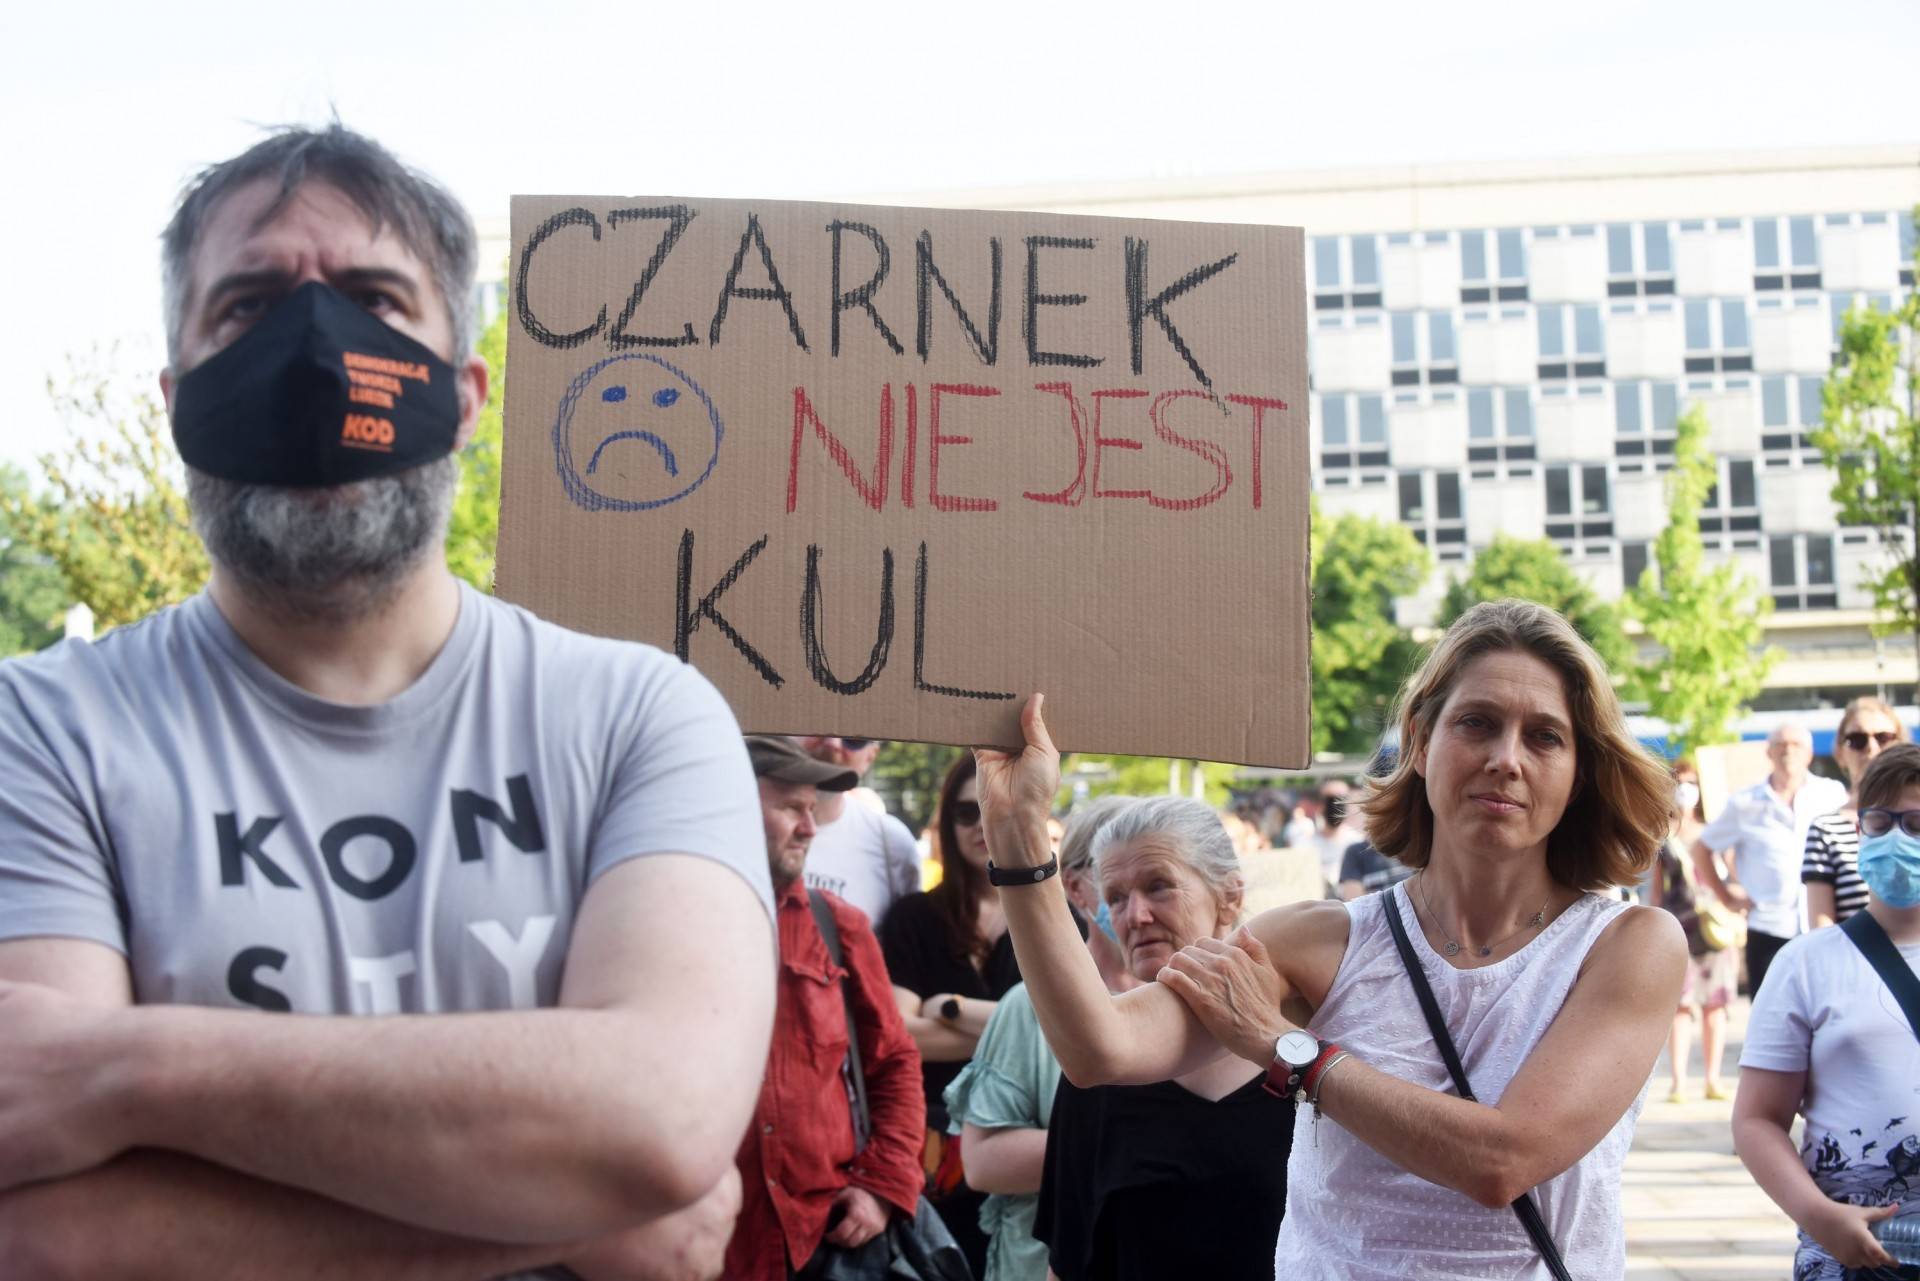 "Czarnek nie jest KUL", protest przeciwko ideologizacji nauki. Fot. Marek Lasyk